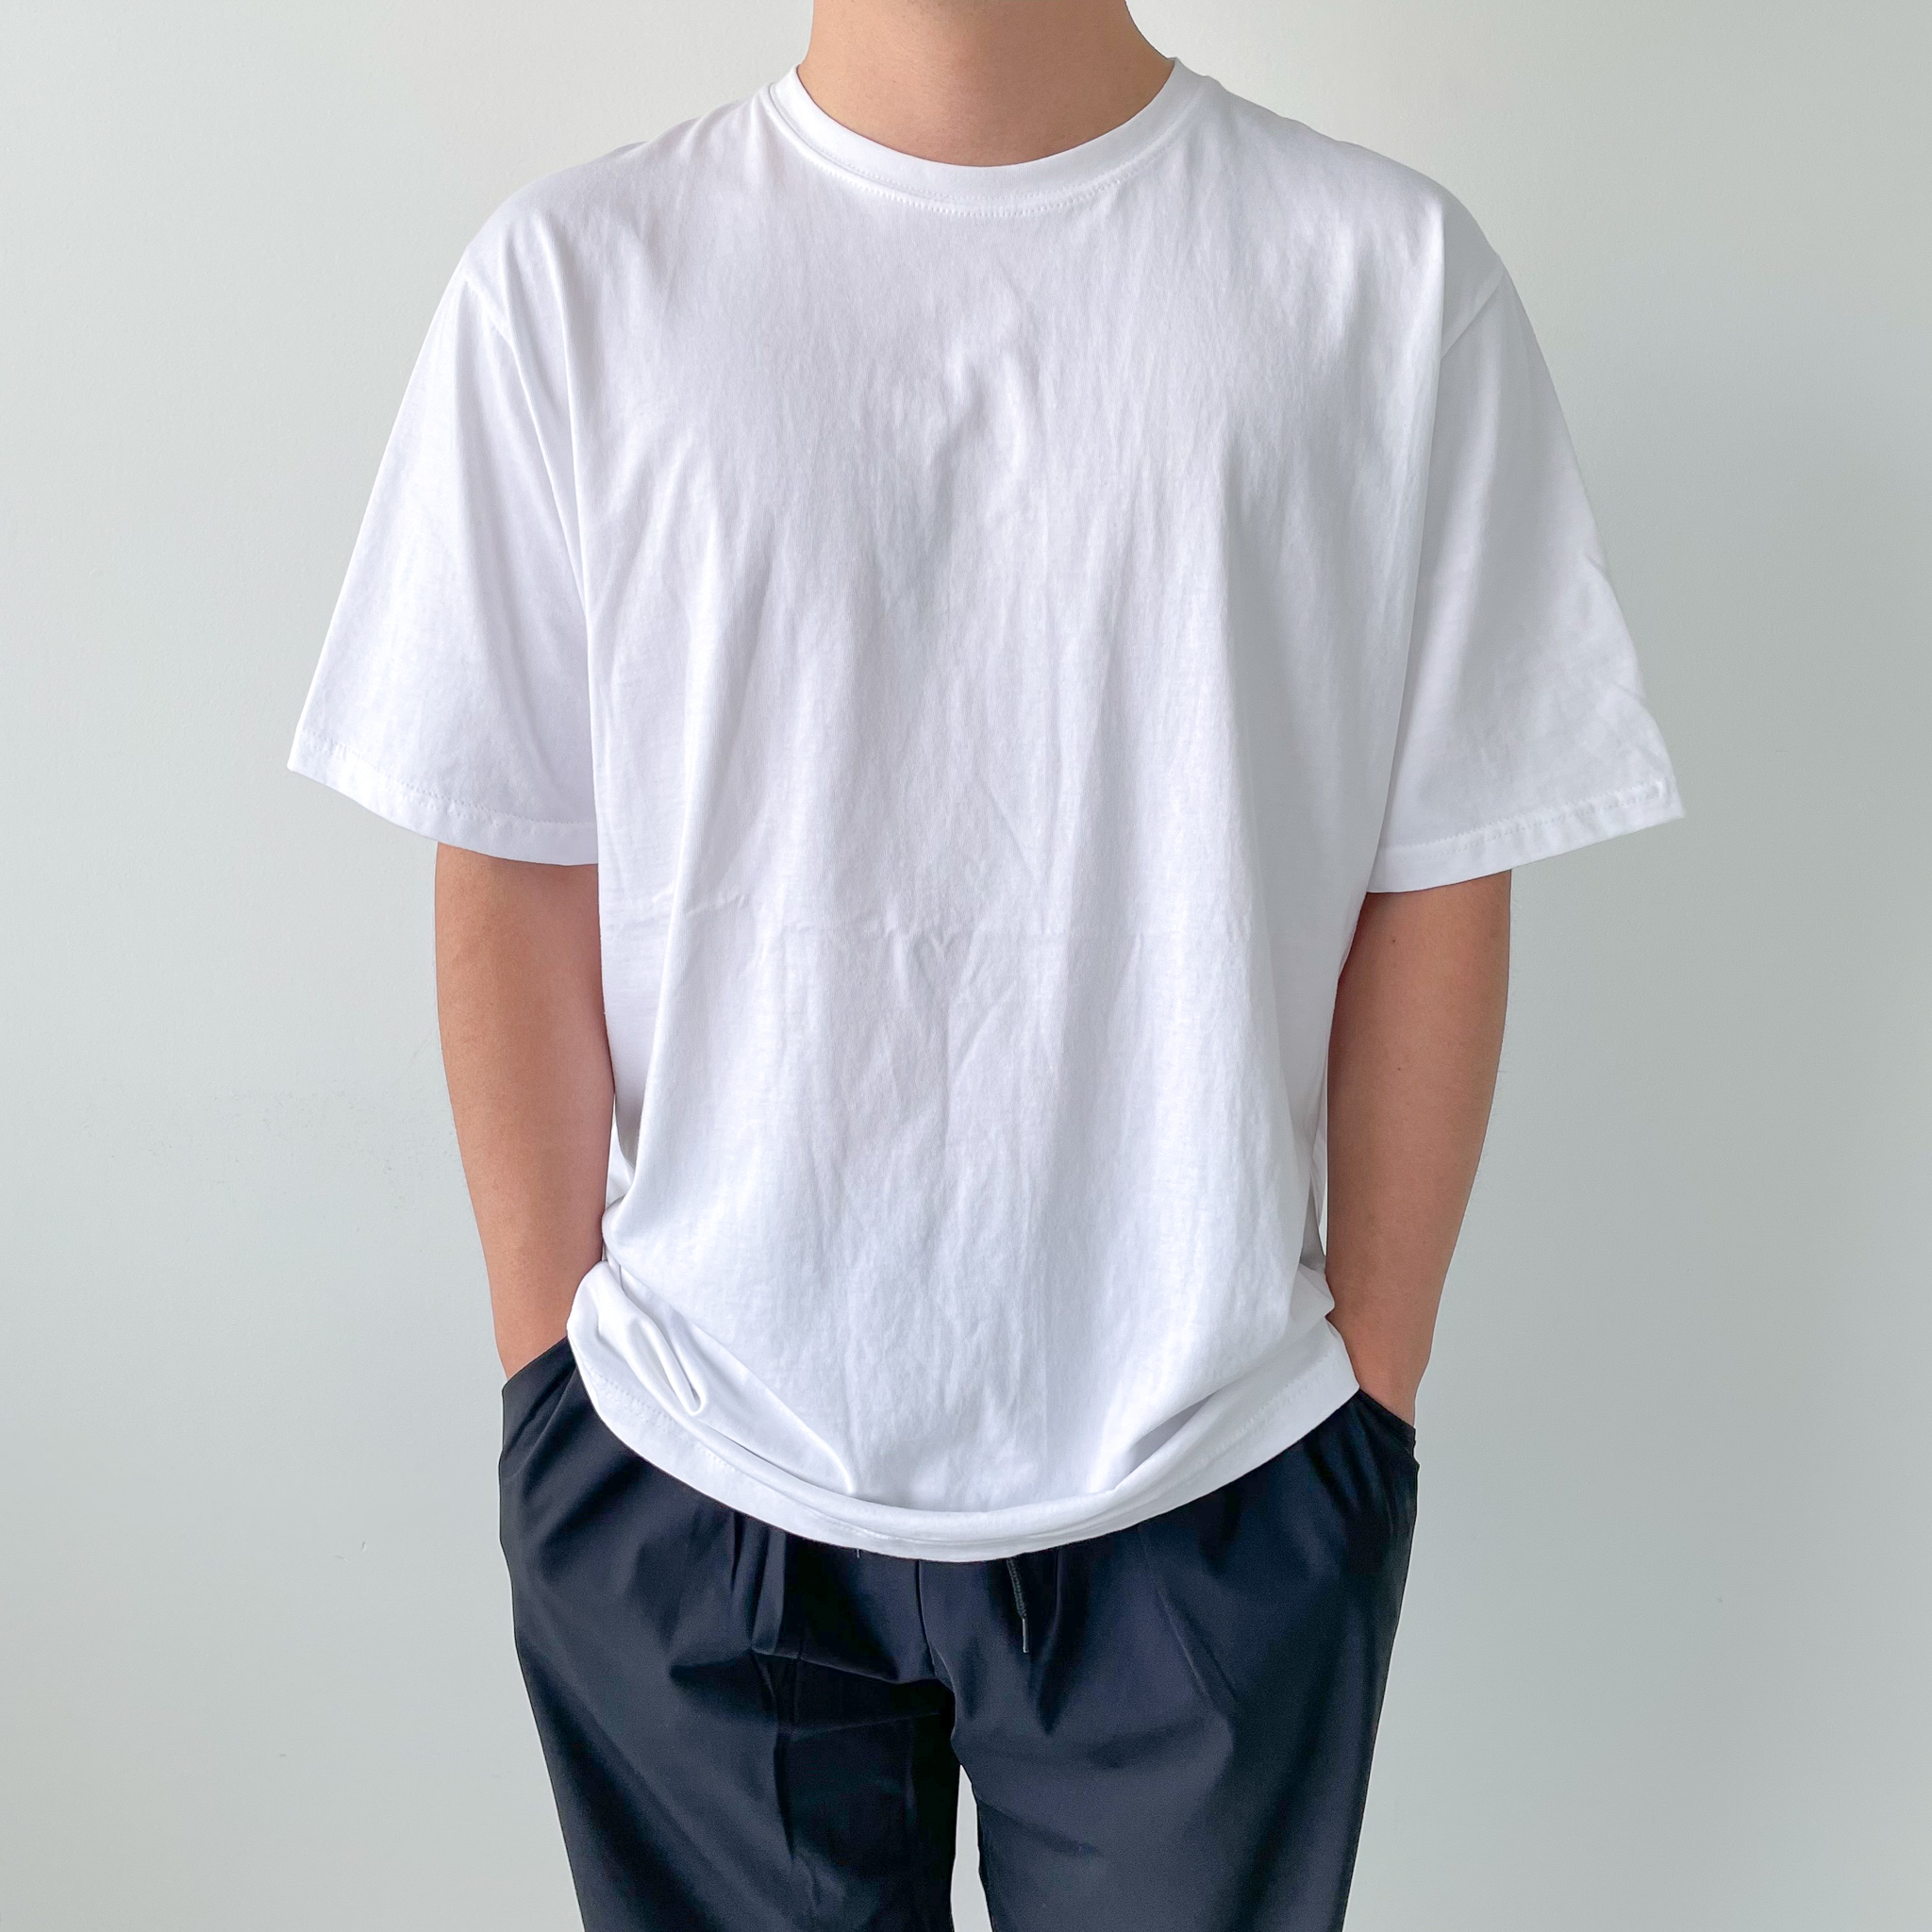 기본 무지 반팔 레이어드 실켓 워싱 티셔츠 고퀄리티 오버핏 (5color) (남녀공용)